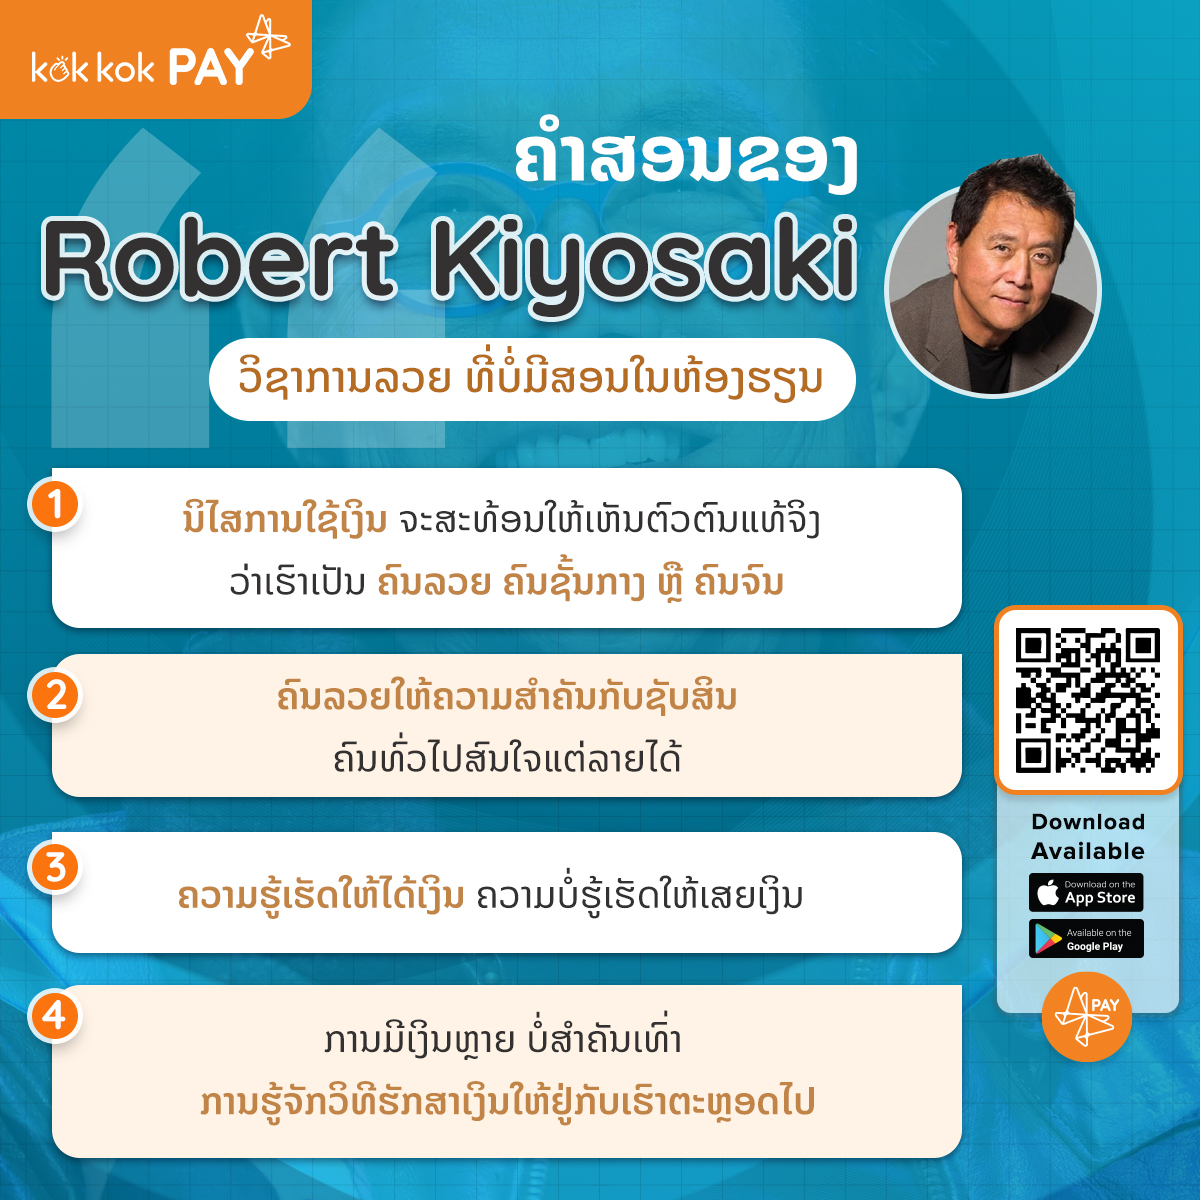 ຄຳສອນຂອງ Robert Kiyosaki ວິຊາການລວຍ ທີ່ບໍ່ມີສອນໃນຫ້ອງຮຽນ